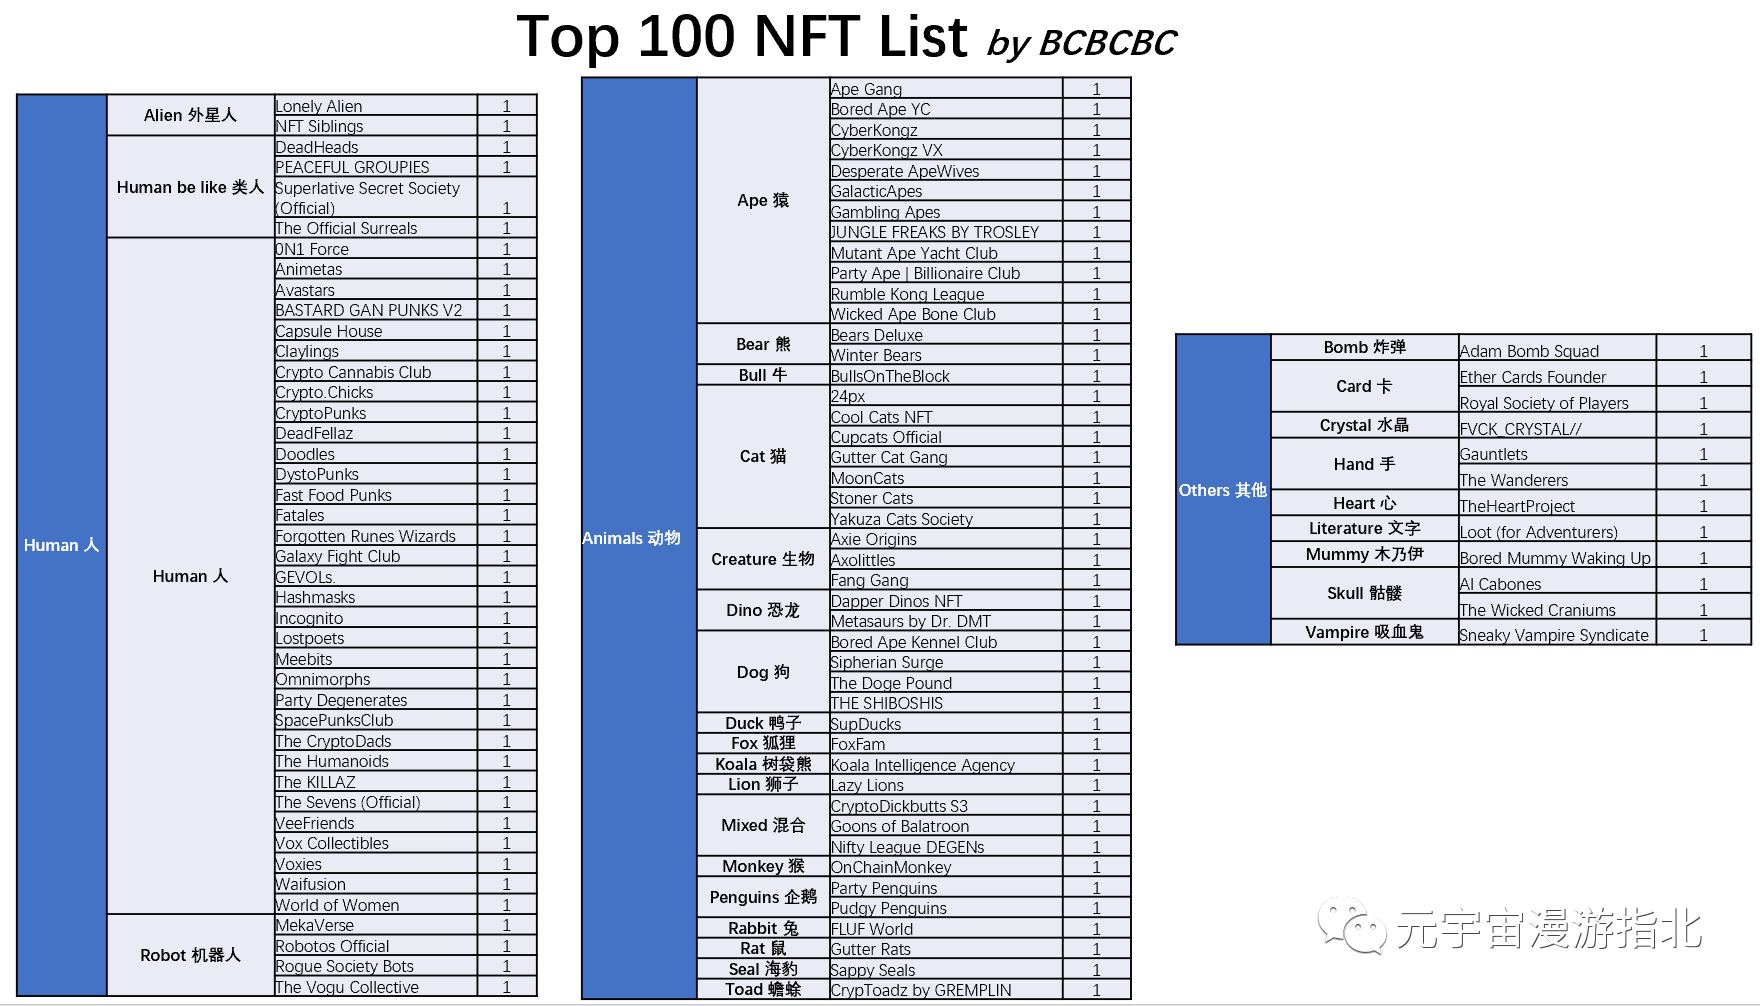 今天聊点轻松的 – Top 100 NFT 都是什么神奇动物